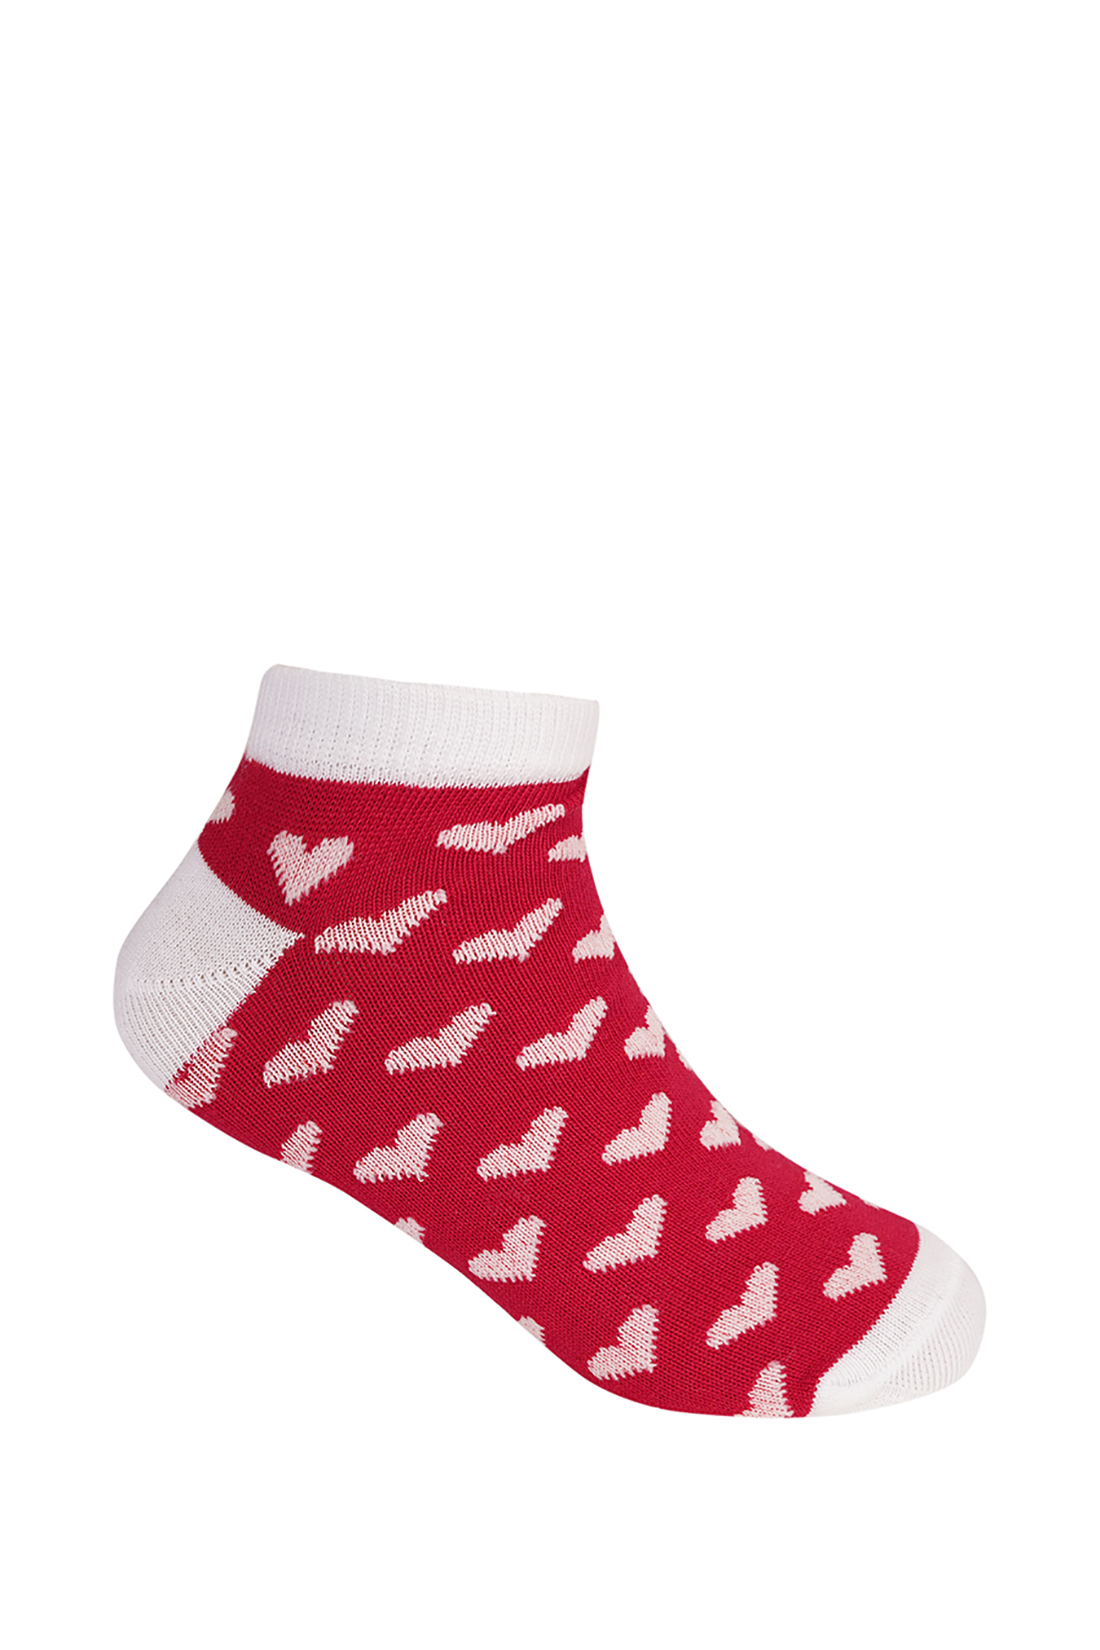 Носки для девочки (арт. baon BK390004), размер 29/31, цвет красный